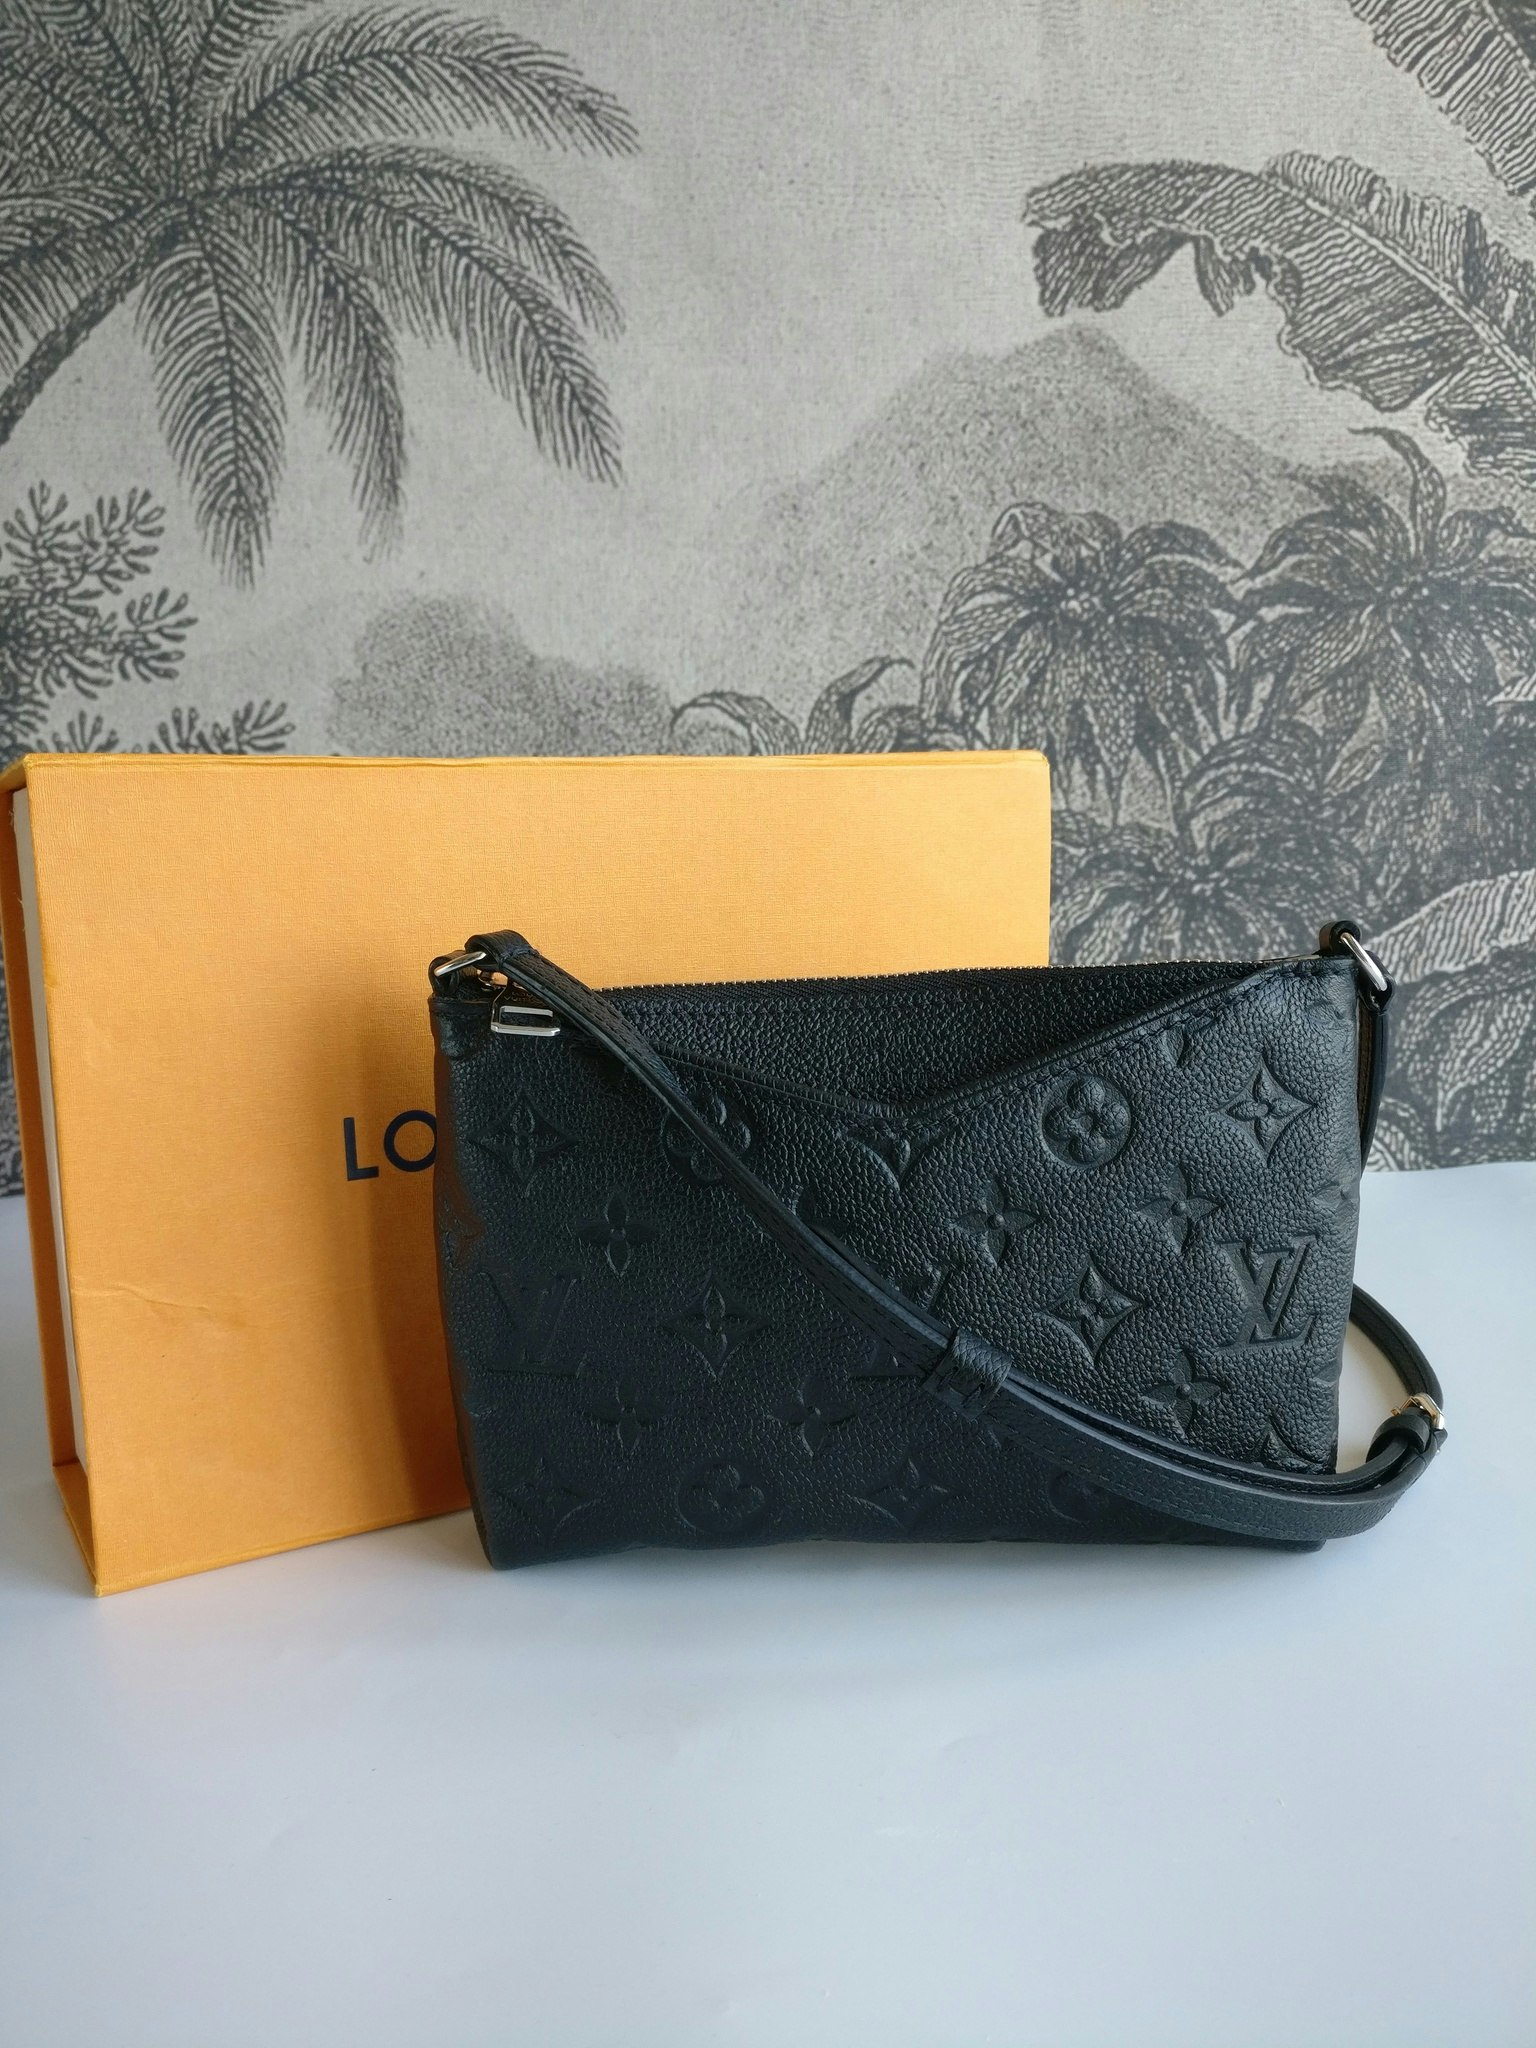 Louis Vuitton Pochette Pallas Uniformes - Good or Bag